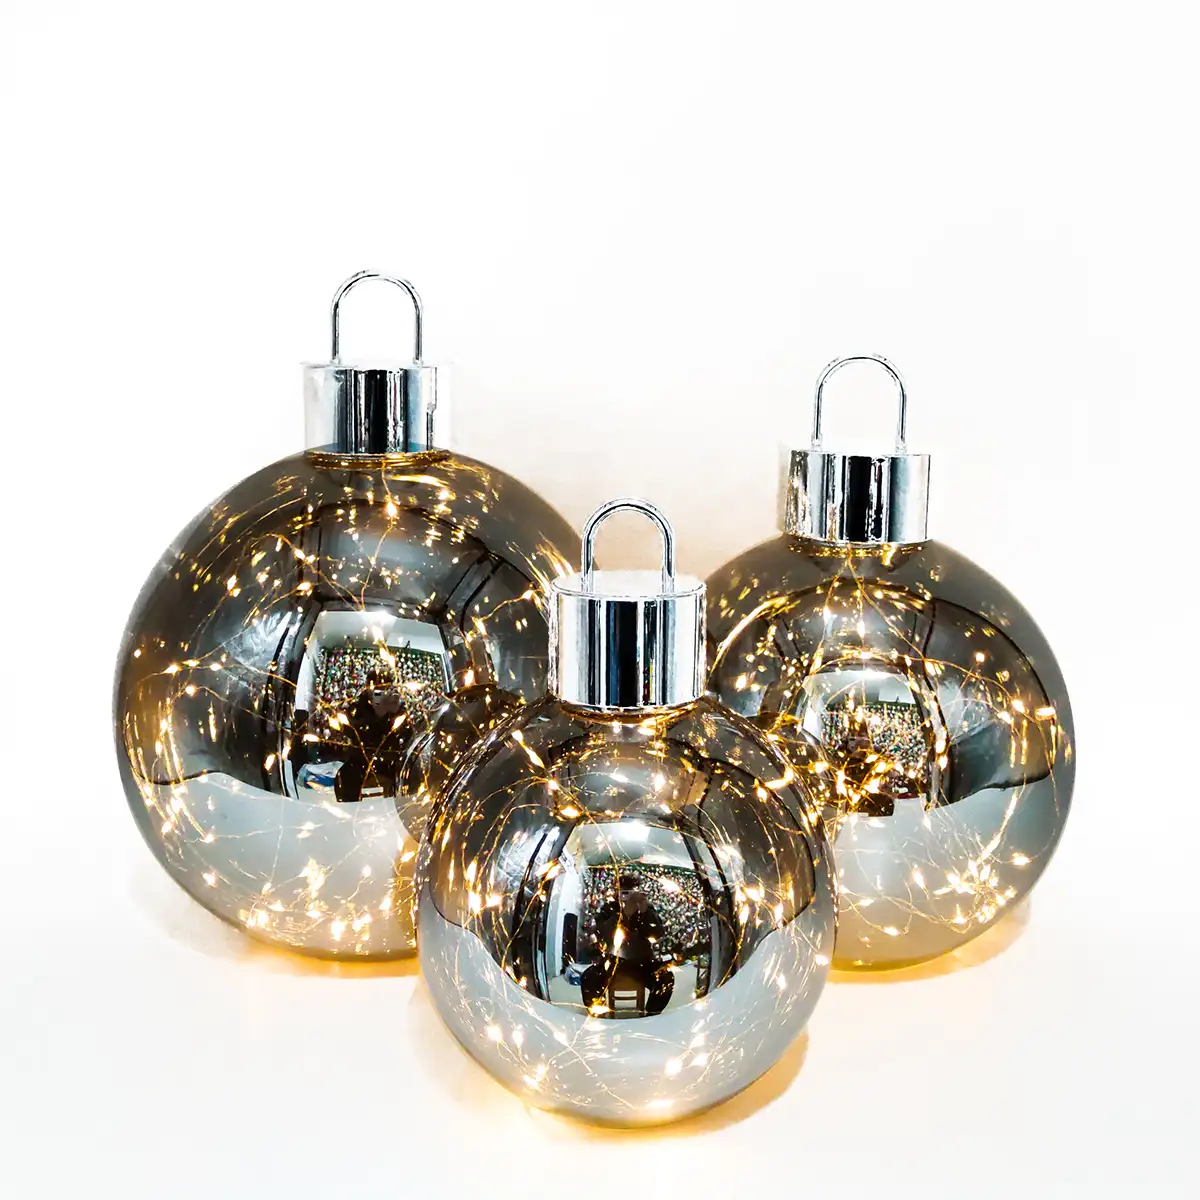 Globo soplado de borosilicato, esfera de mesa de cristal con luces de hadas, bolas de cristal led grandes para Navidad